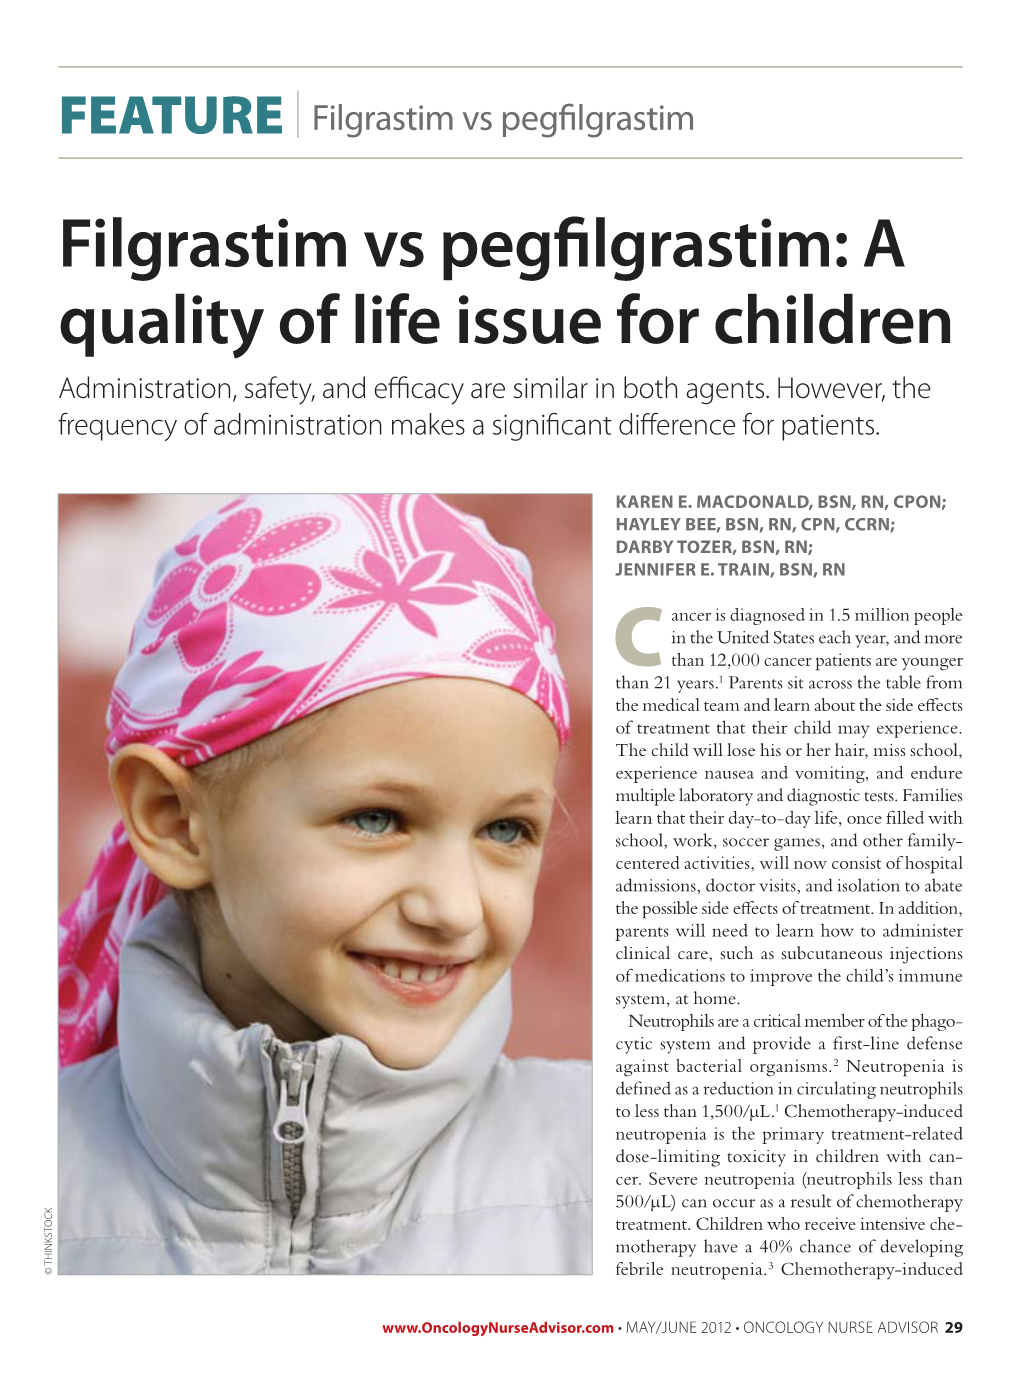 Filgrastim Vs Pegfilgrastim: a Quality of Life Issue for Children